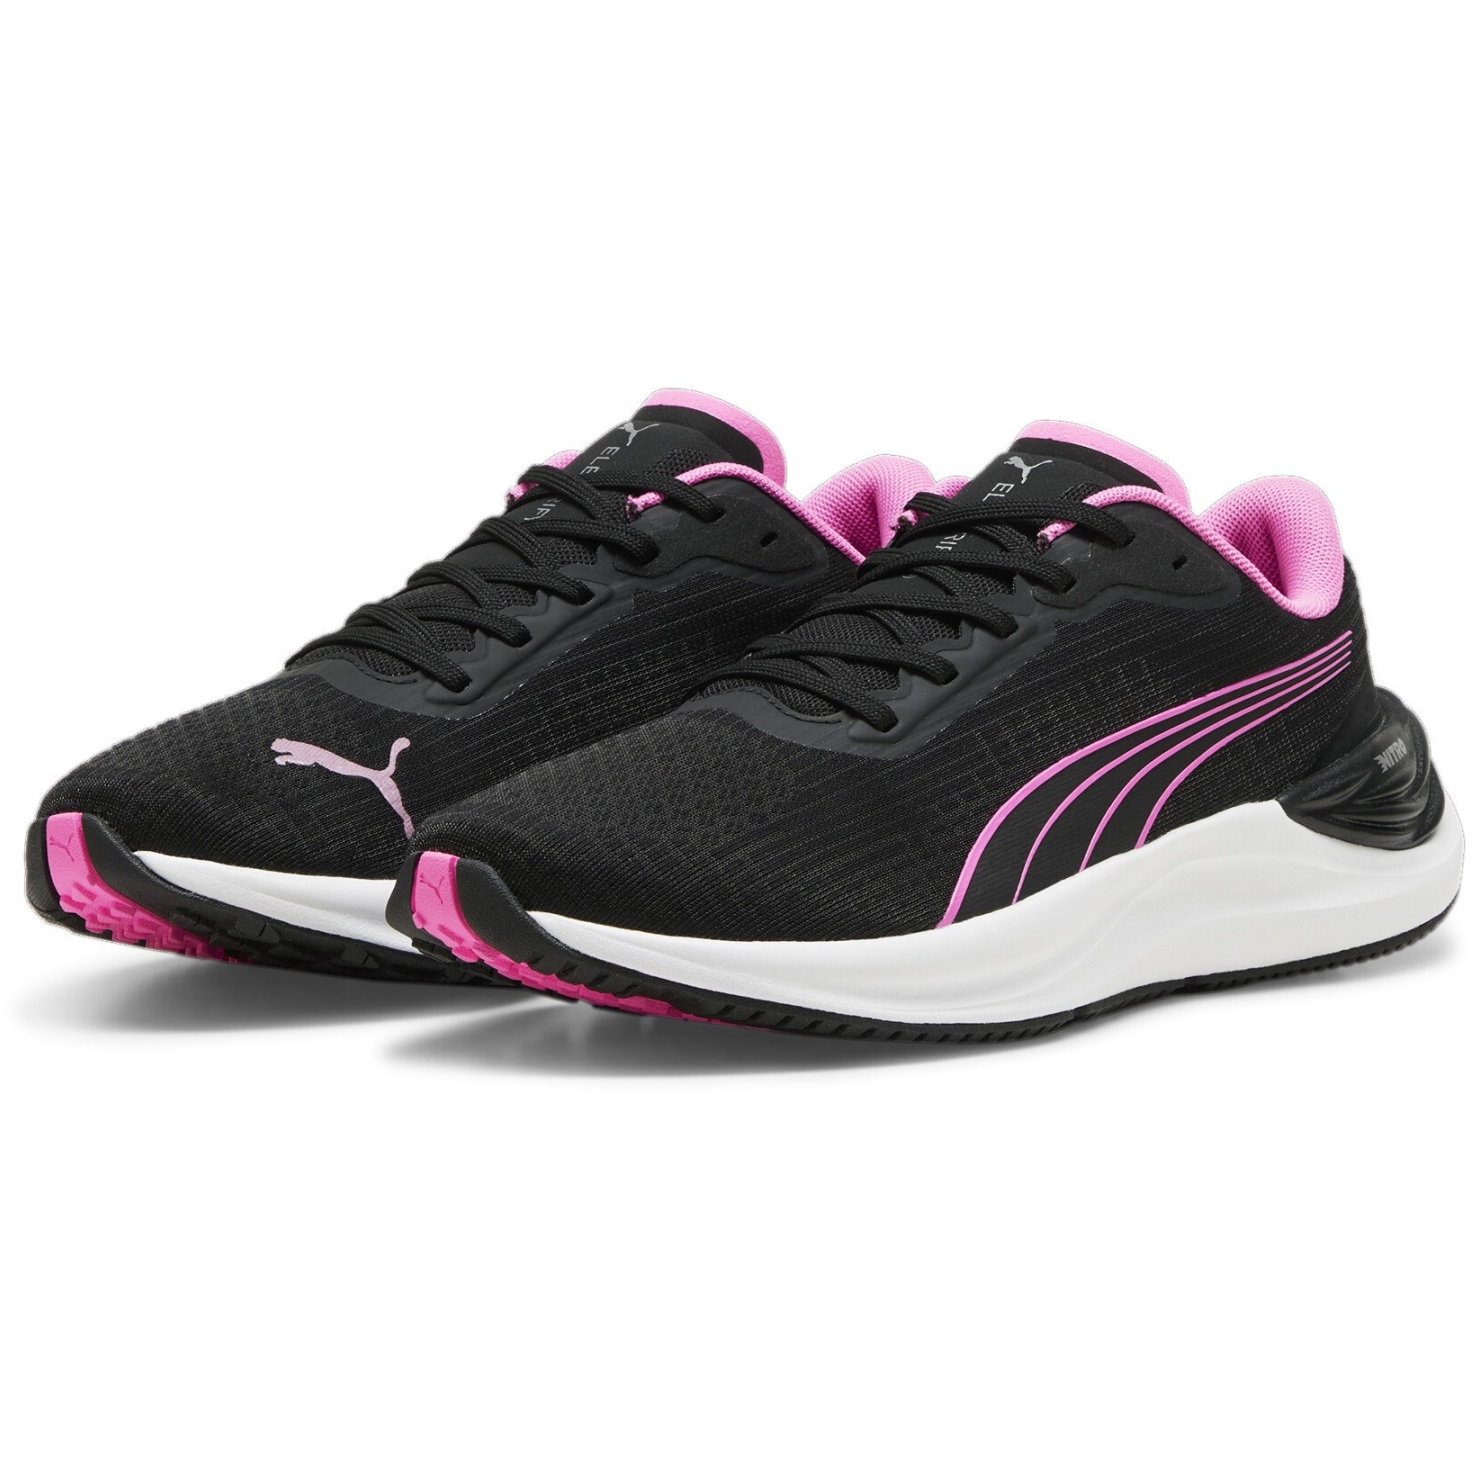 Produktbild von Puma Electrify Nitro 3 Laufschuhe Damen - Puma Black-Poison Pink